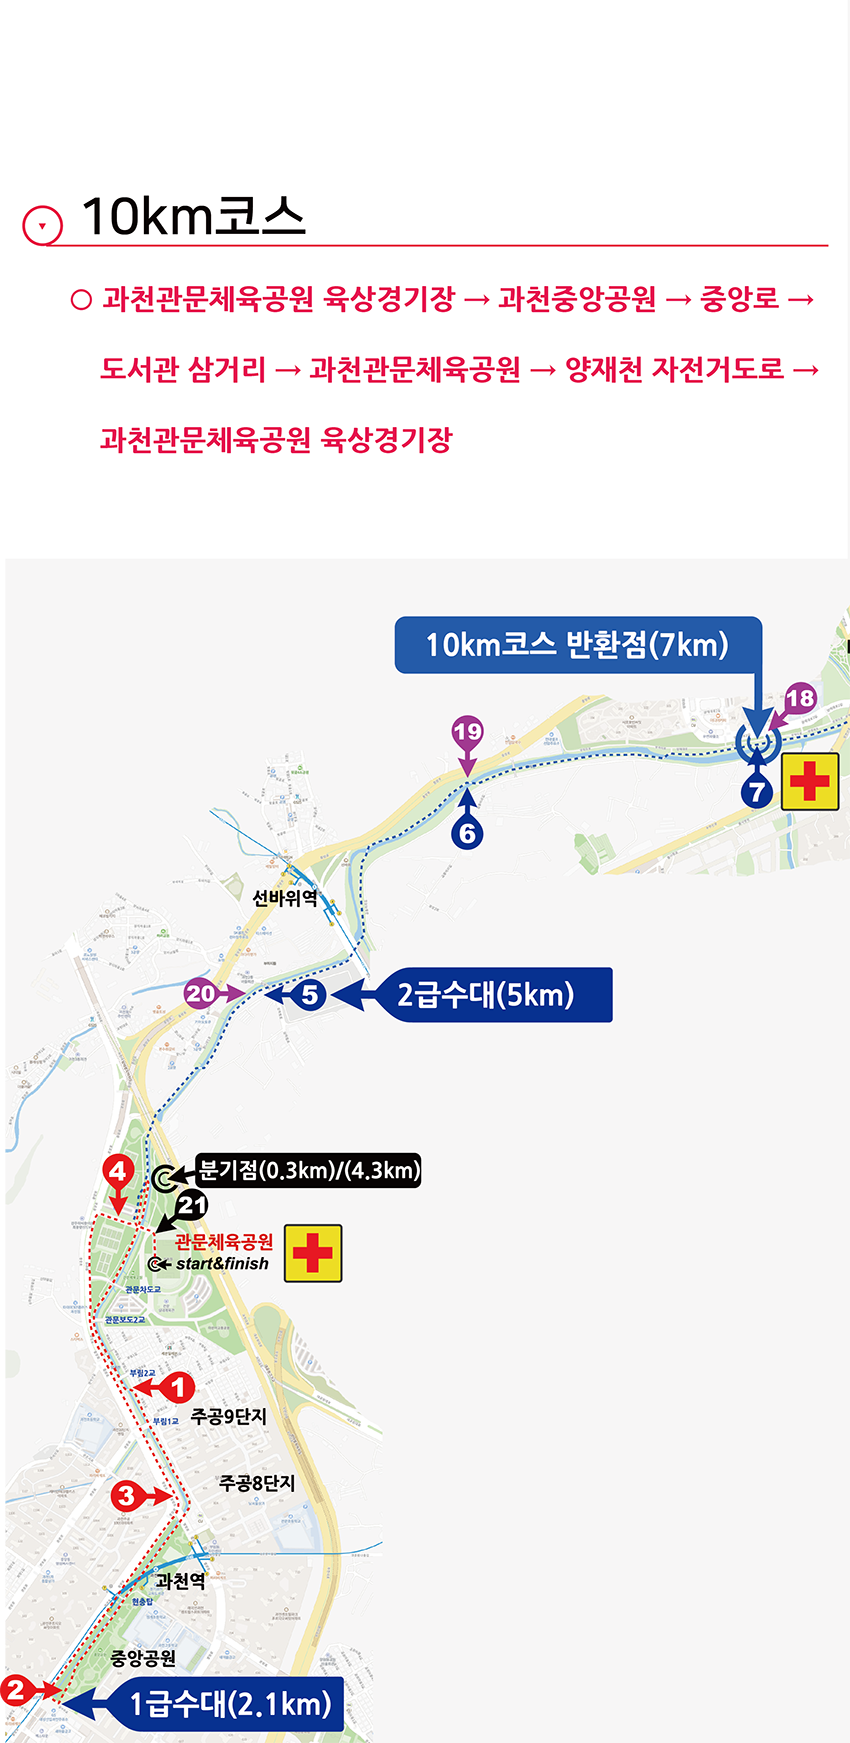 과천마라톤 대회 코스맵 - 10km